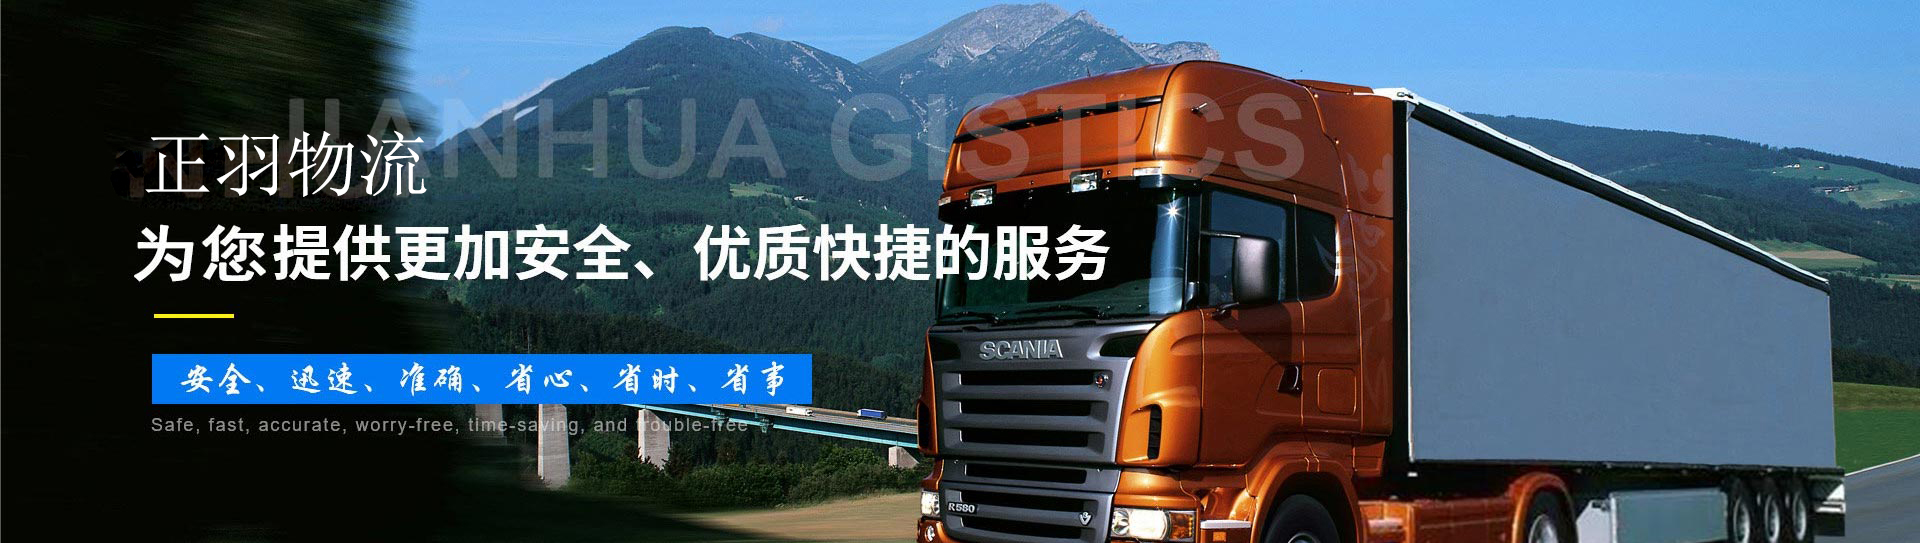 上海物流公司|上海货运公司欢迎您